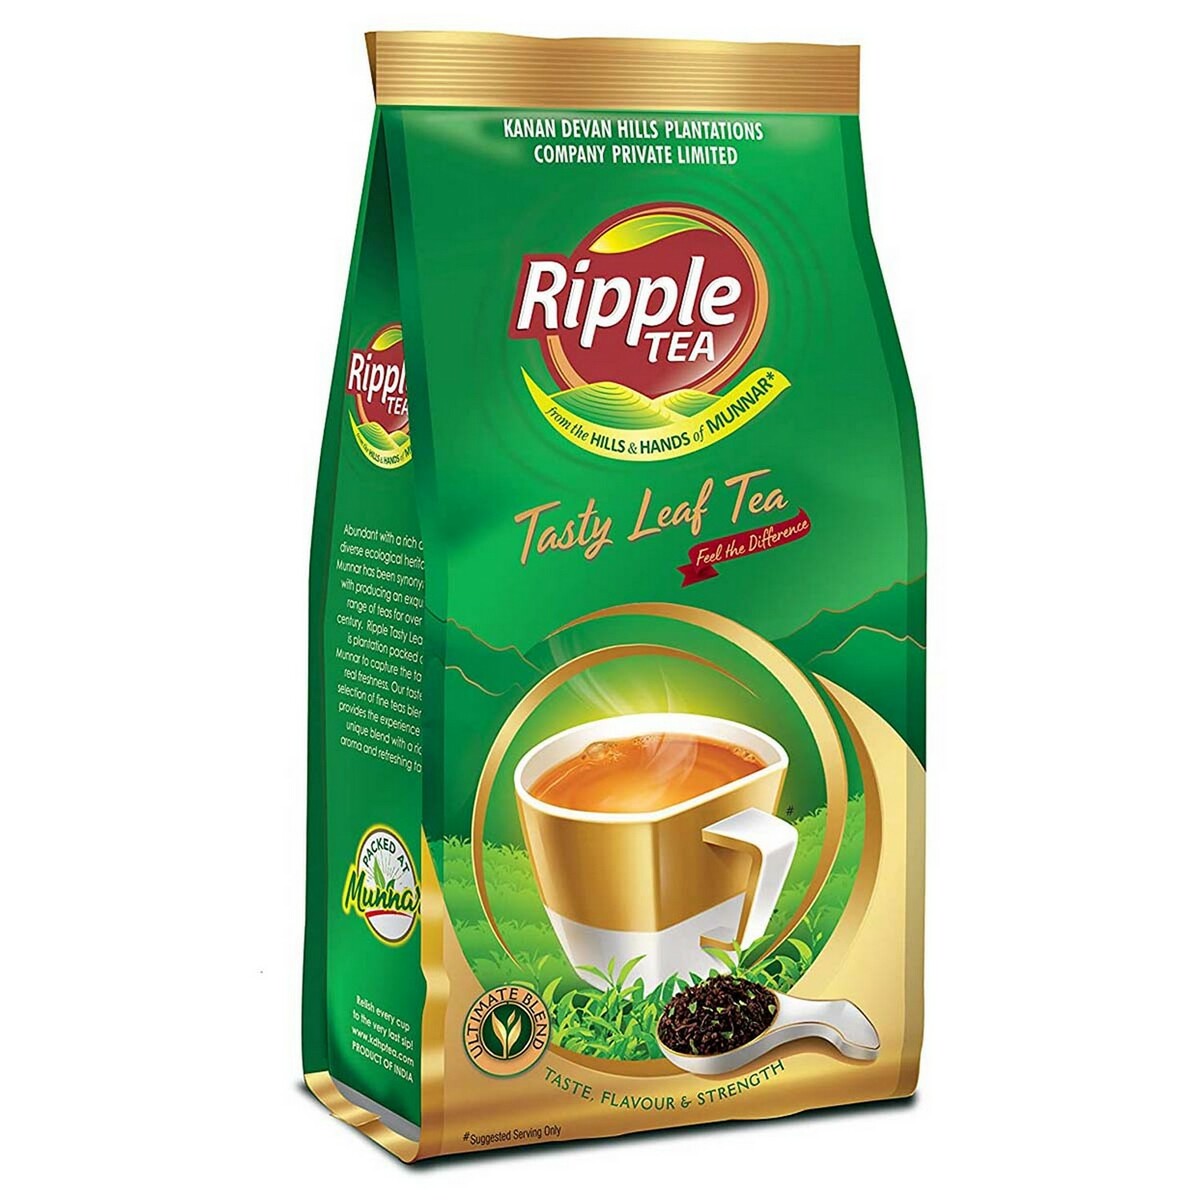 Ripple Premium Tea Leaf 250g